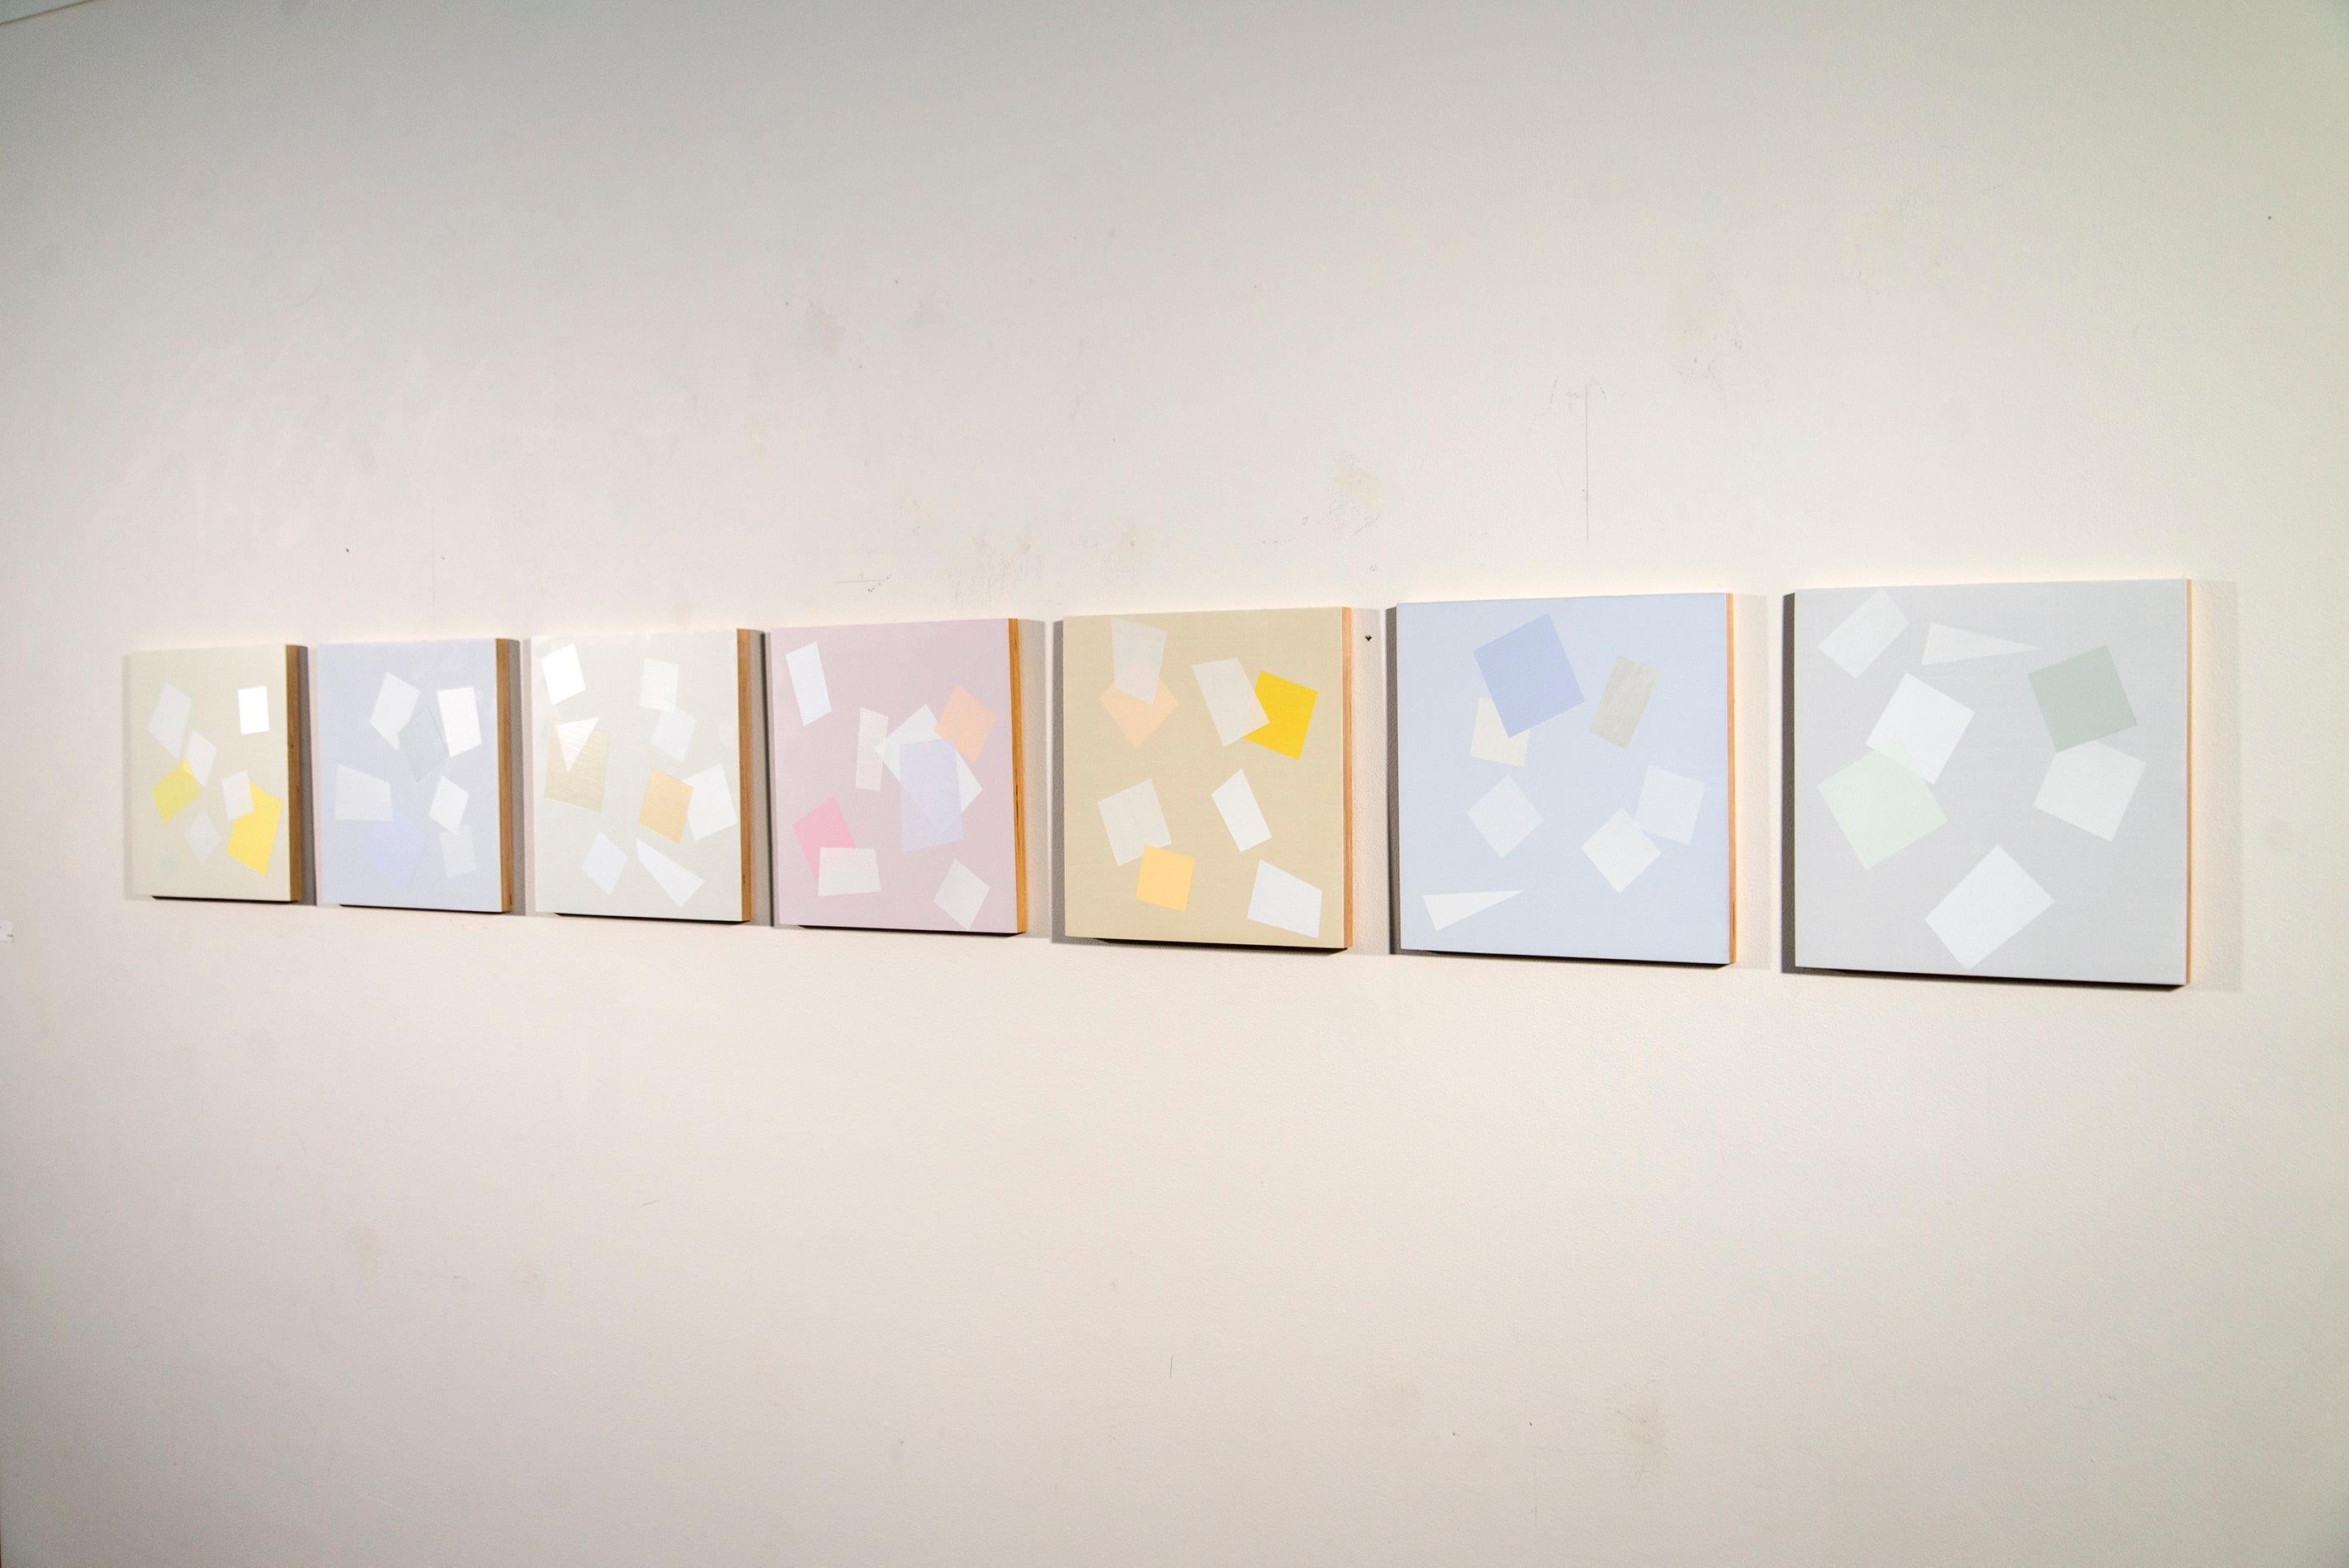 Abstract Painting Milly Ristvedt - 7 Pieces for Arvo One - légères, colorées, multiples, carrées, acrylique sur toile